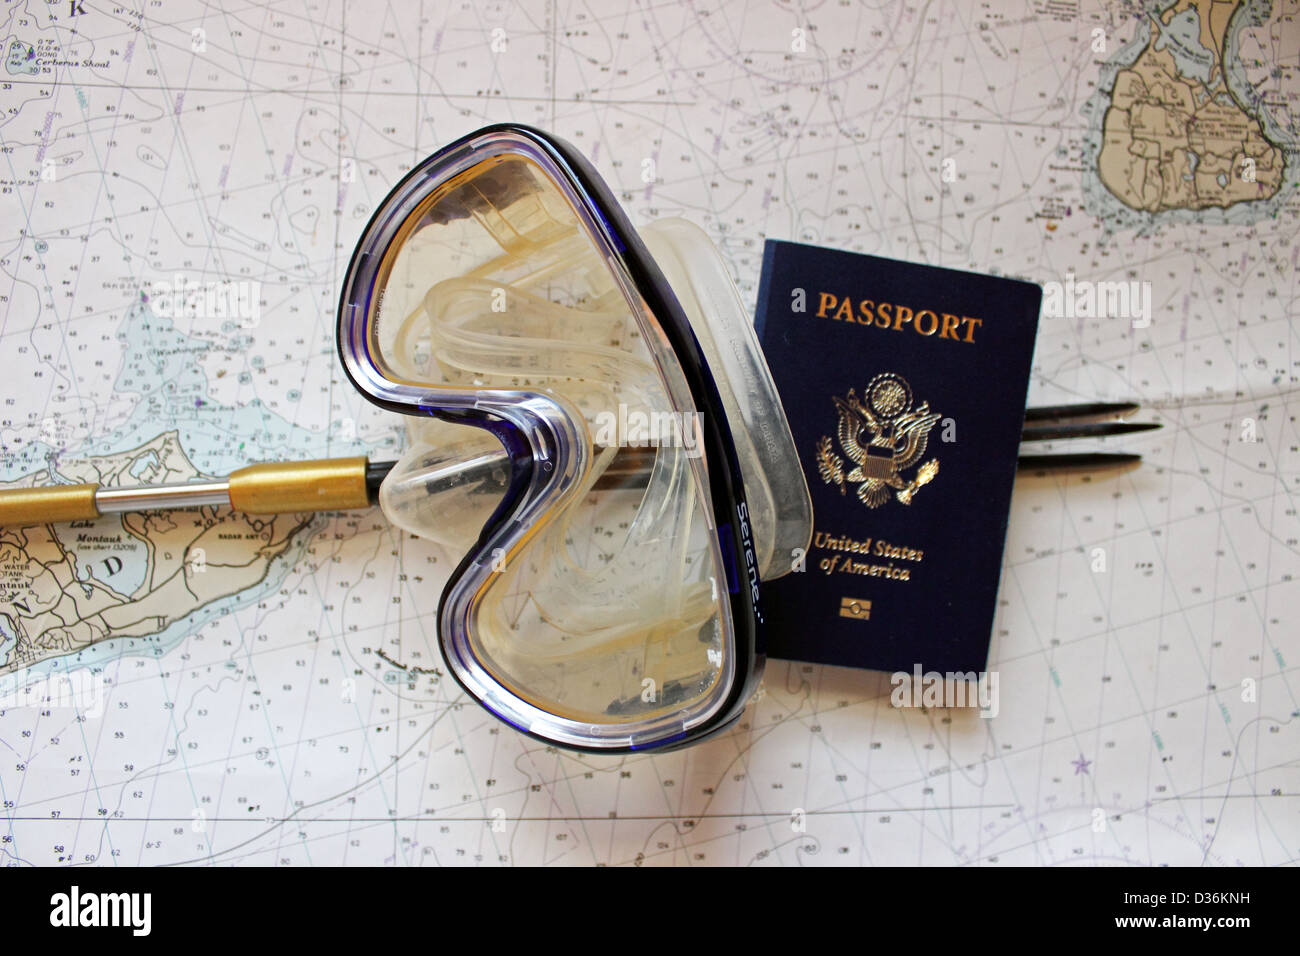 Un pôle de pêche au harpon et masque de plongée avec passeport se situent sur une carte marine. Banque D'Images